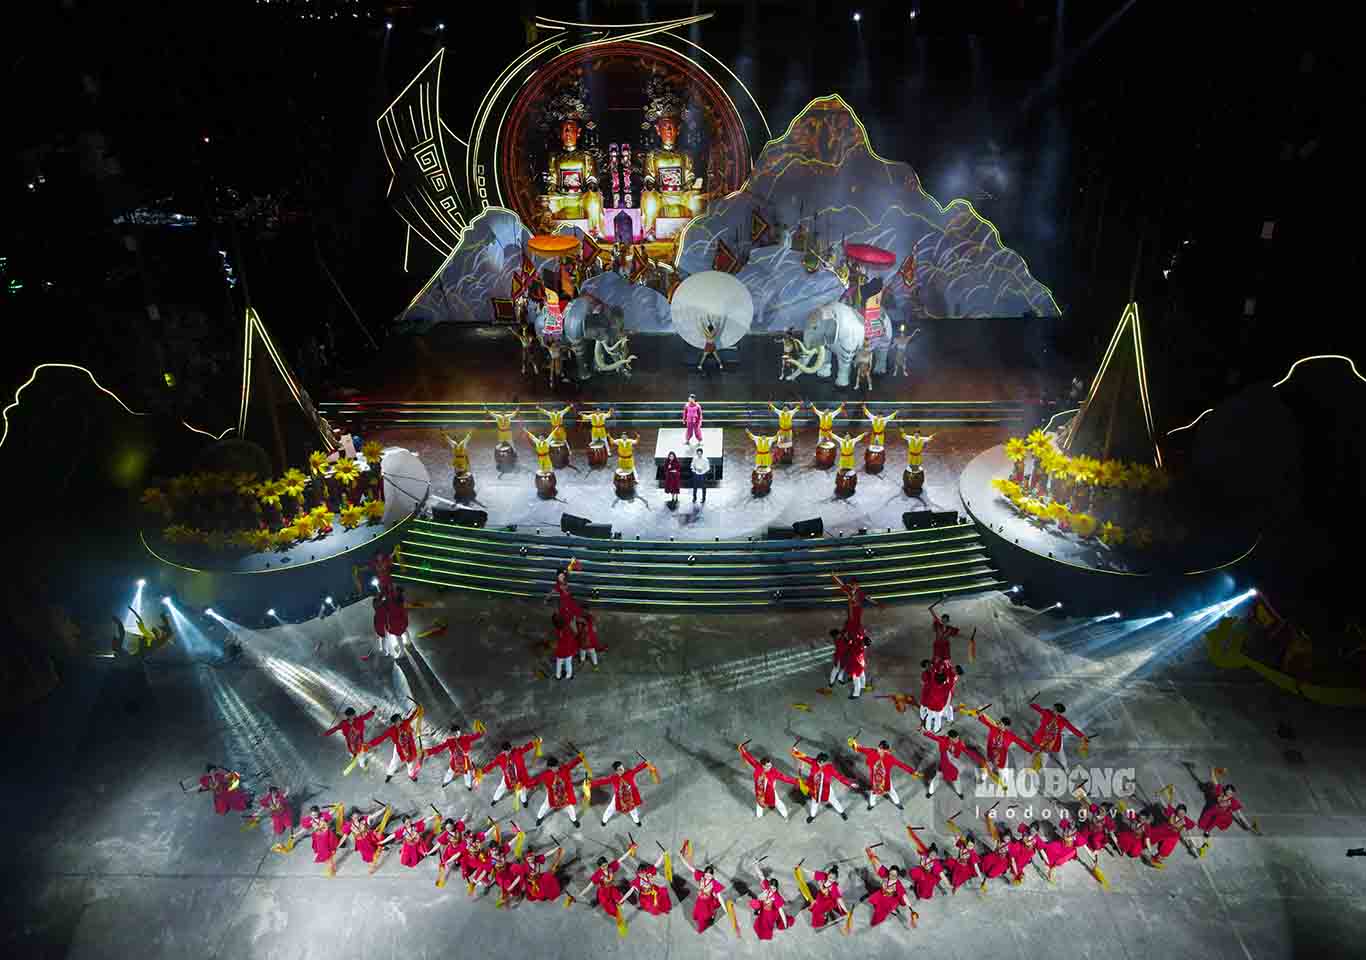 Tối 15.2 (mùng 5 Tết), UBND huyện Mê Linh đã tổ chức tổng duyệt chương trình nghệ thuật trình diễn âm thanh, ánh sáng đặc sắc với chủ đề “Âm vang Mê Linh“. 